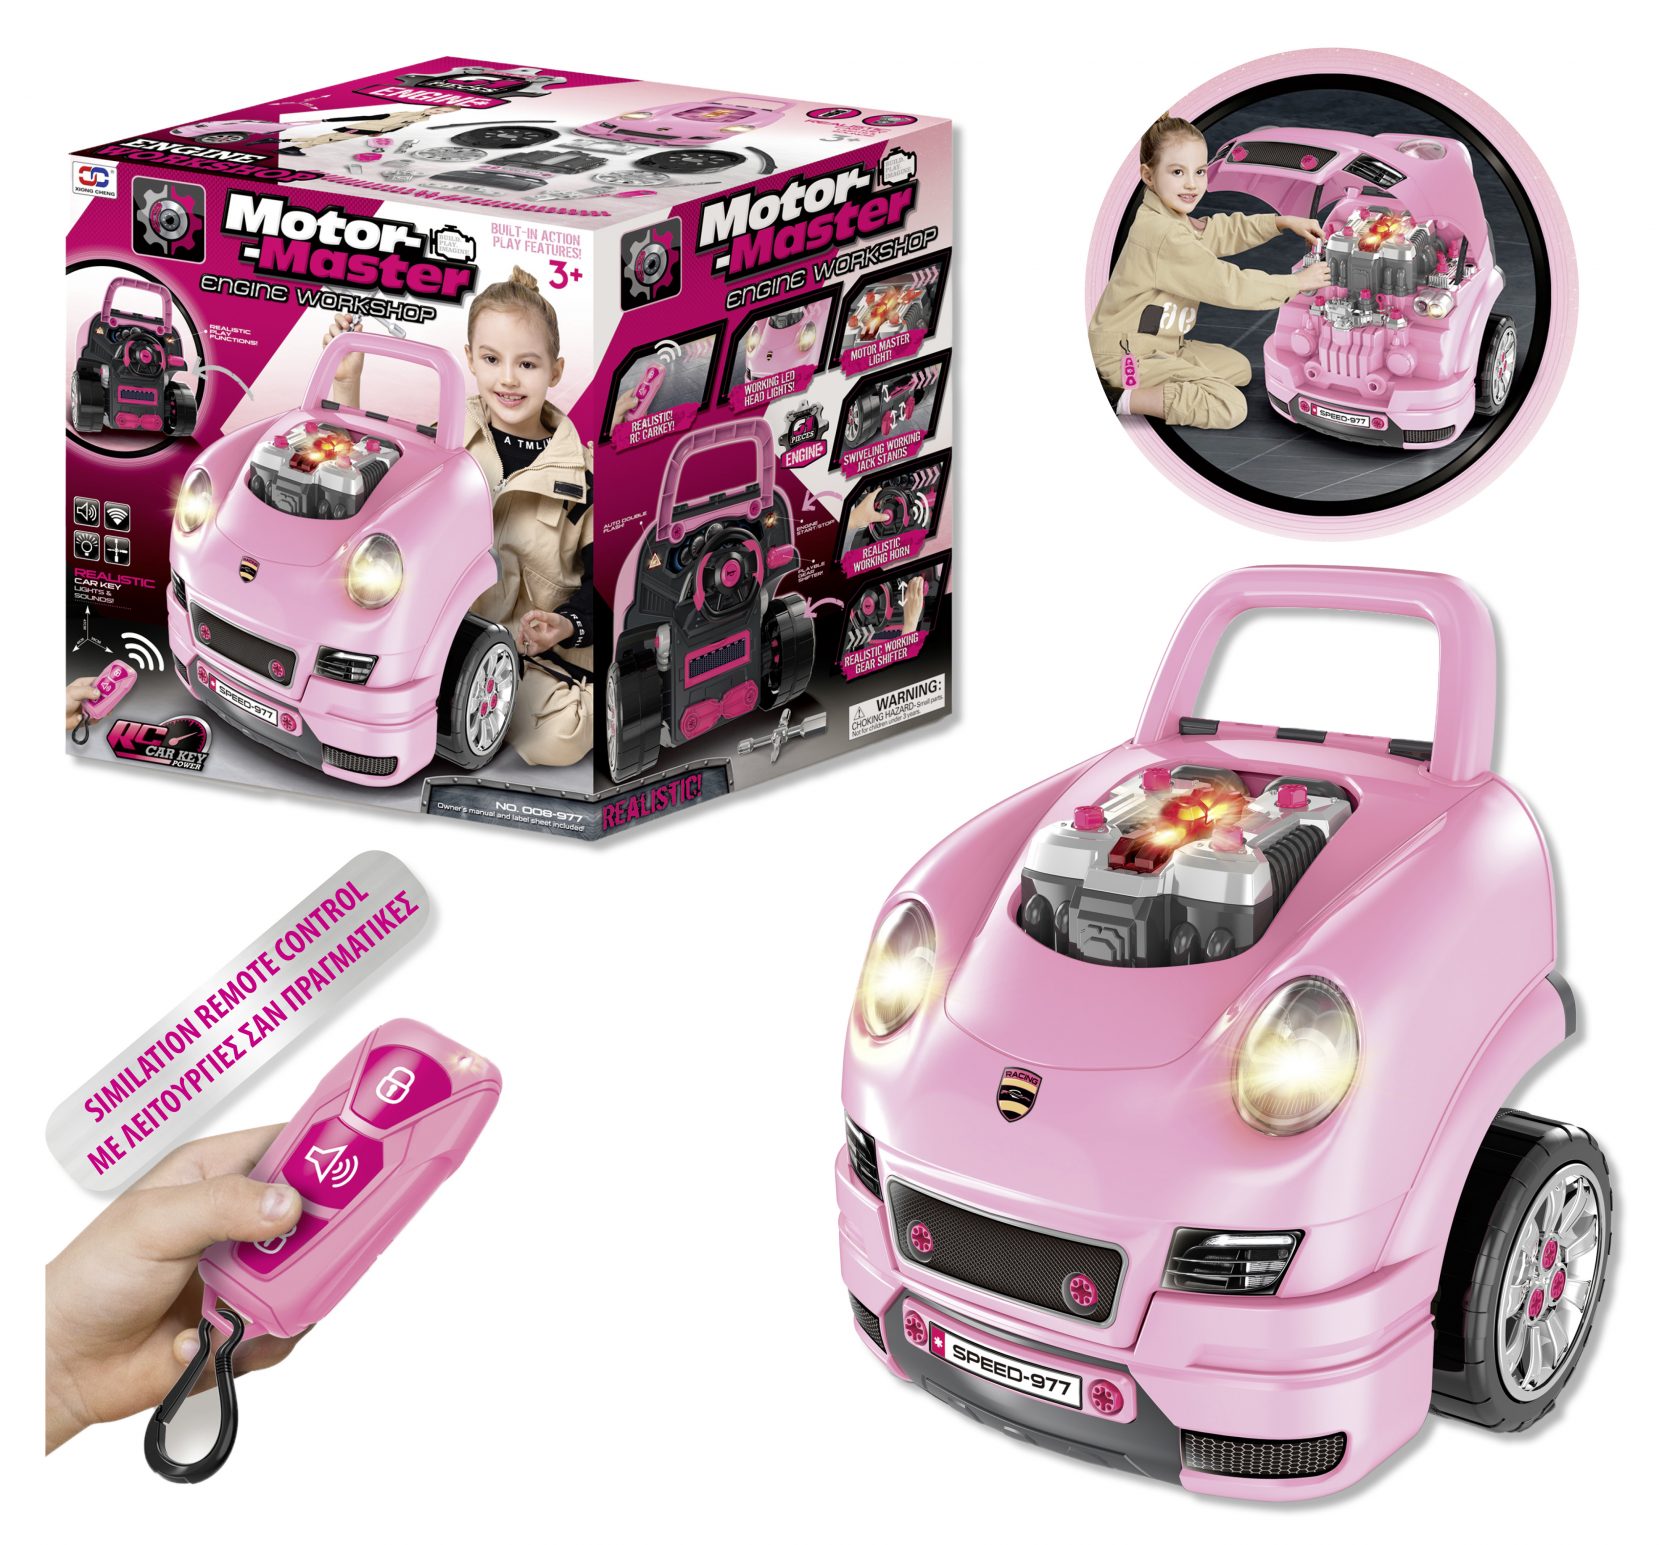 Το αυτοκίνητο του παιδιού σε κόκκινο ή ροζ χρώμα που το επισκευάζει μόνο του